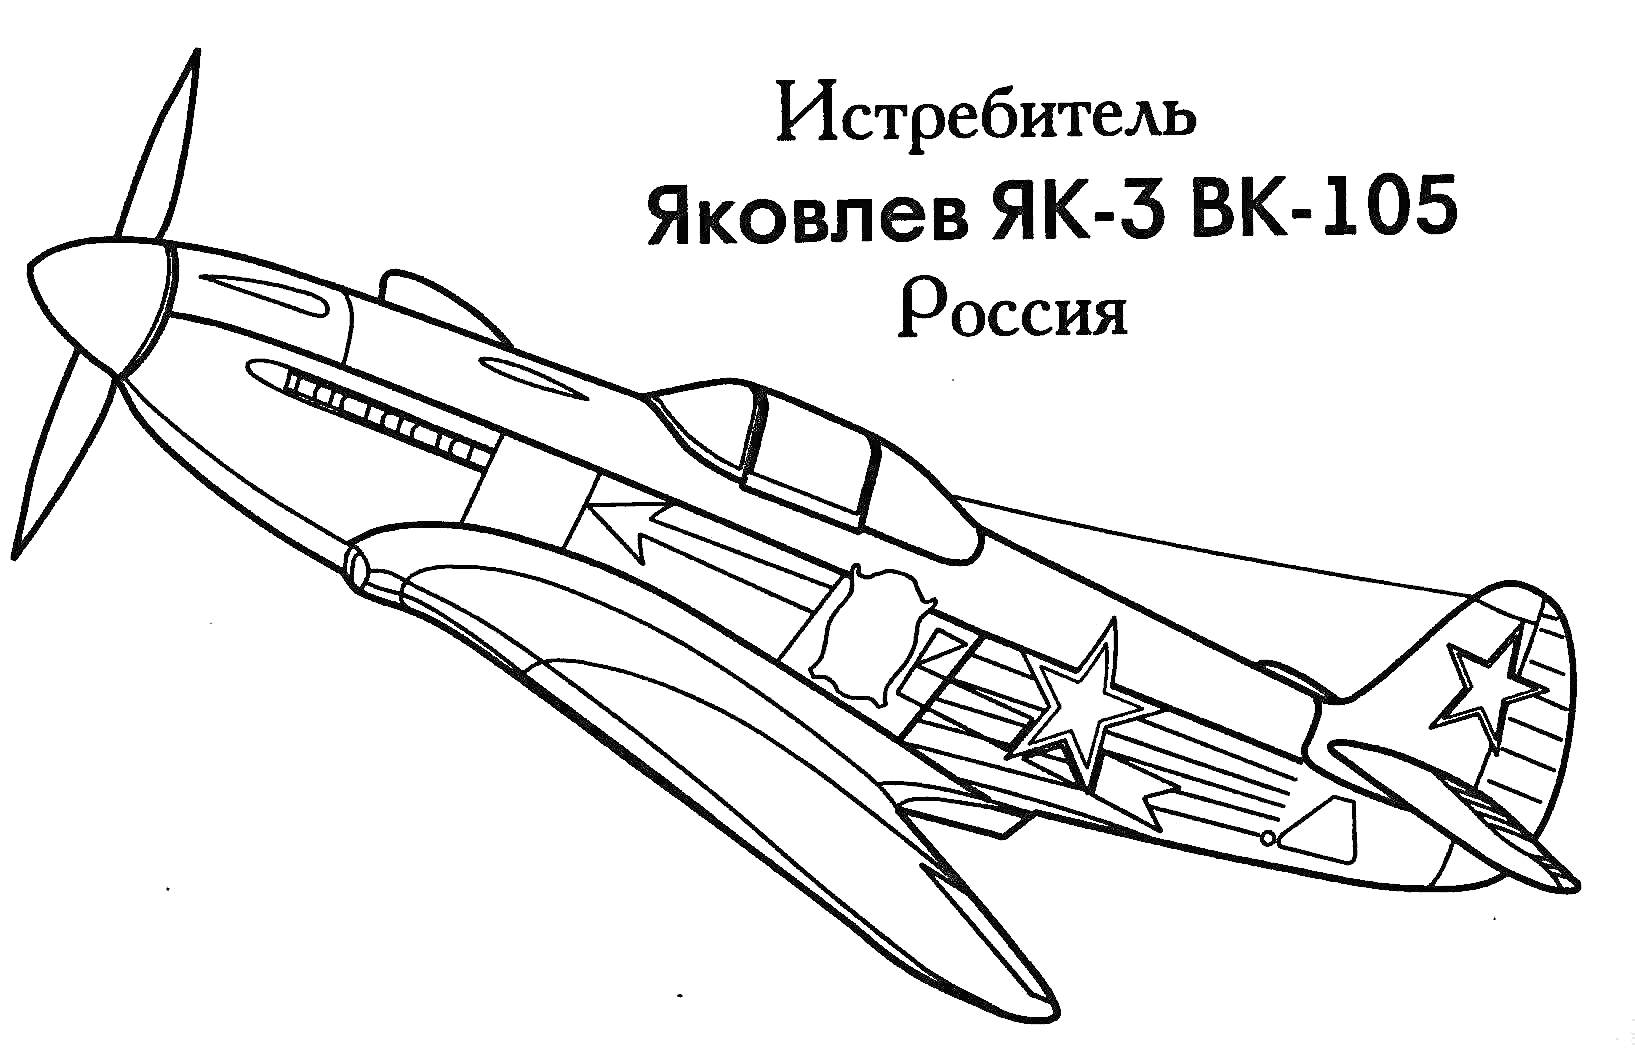 Раскраска Истребитель Як-3 с двигателем ВК-105, Россия, со звездами на крыльях и фюзеляже